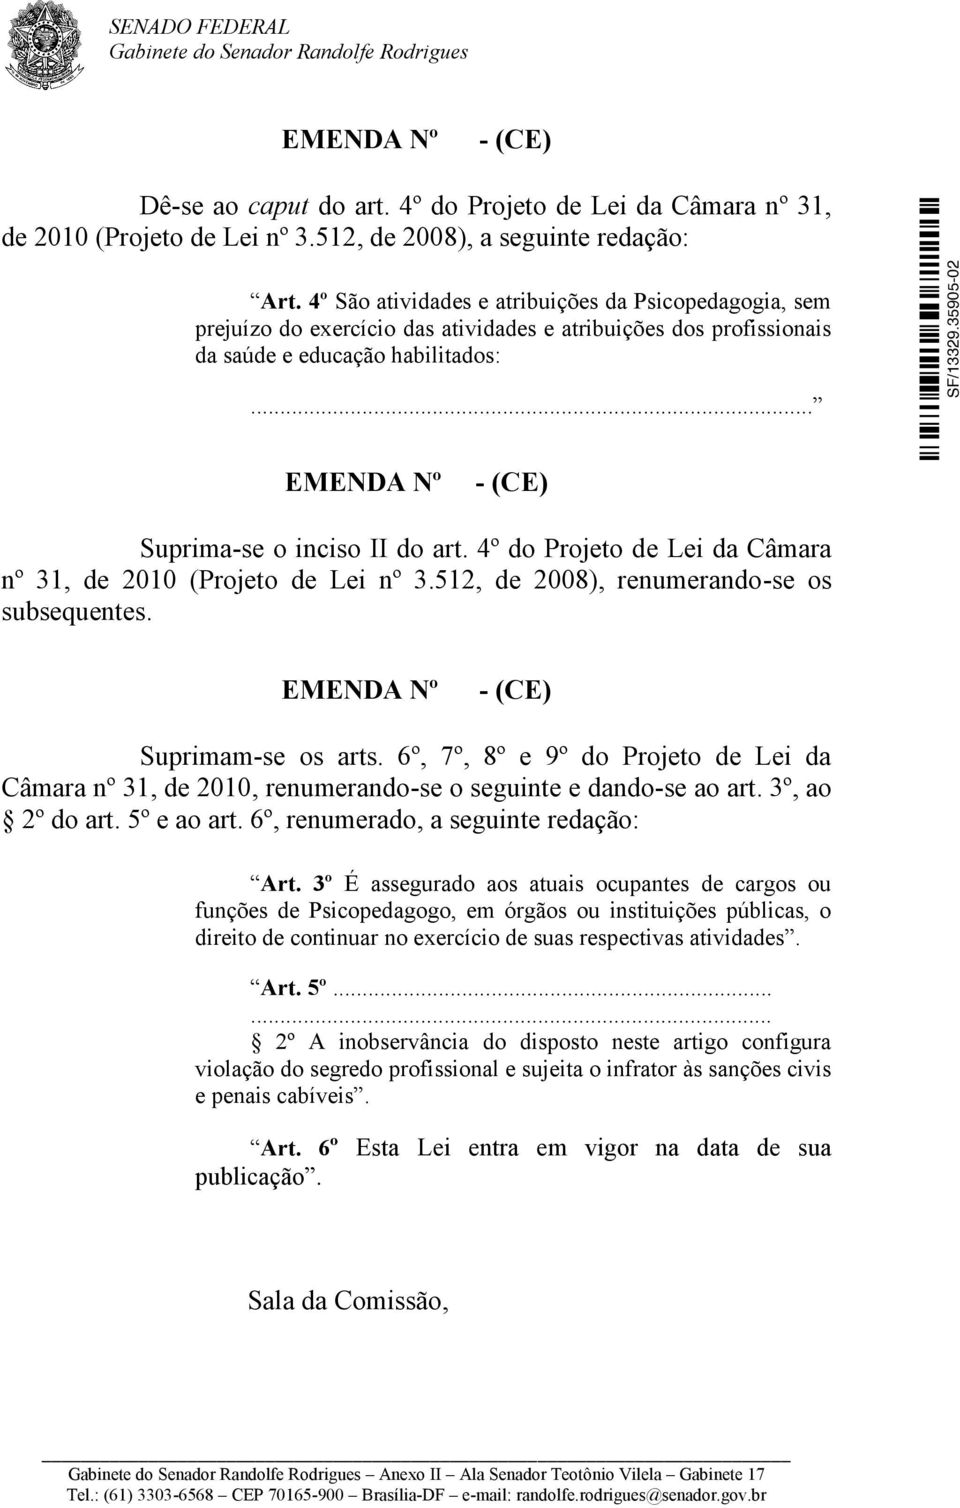 .. EMENDA Nº - (CE) Suprima-se o inciso II do art. 4º do Projeto de Lei da Câmara nº 31, de 2010 (Projeto de Lei nº 3.512, de 2008), renumerando-se os subsequentes.